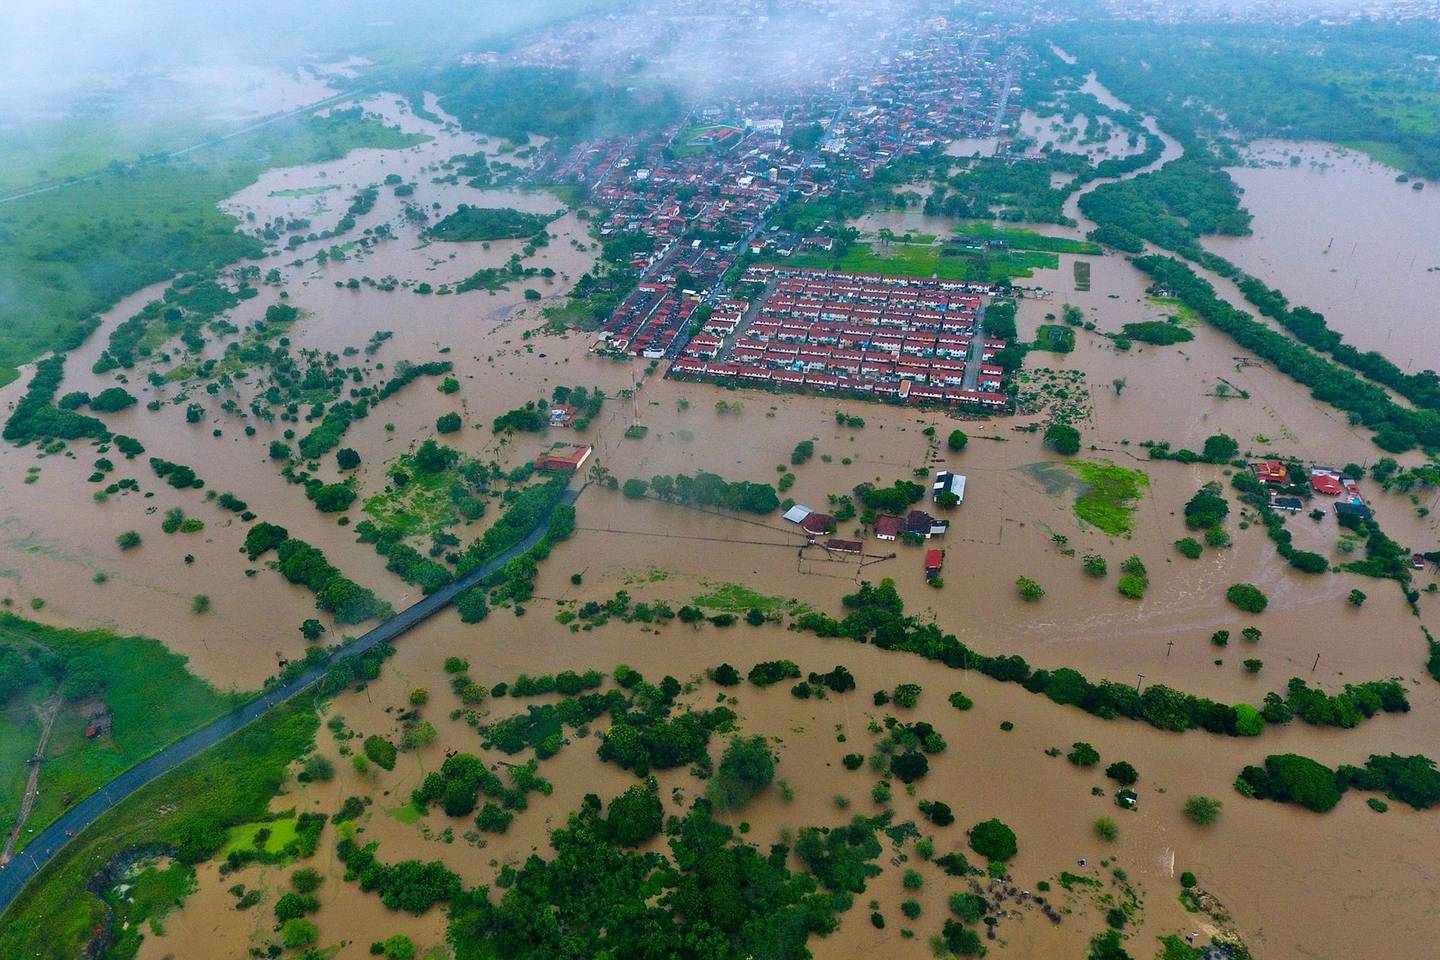 Inundaciones causadas por fuertes lluvias en Itapetinga, Estado de Bahía, Brasil, el 26 de diciembre. Fotógrafo: Manuella Luana/AFP/Getty Images